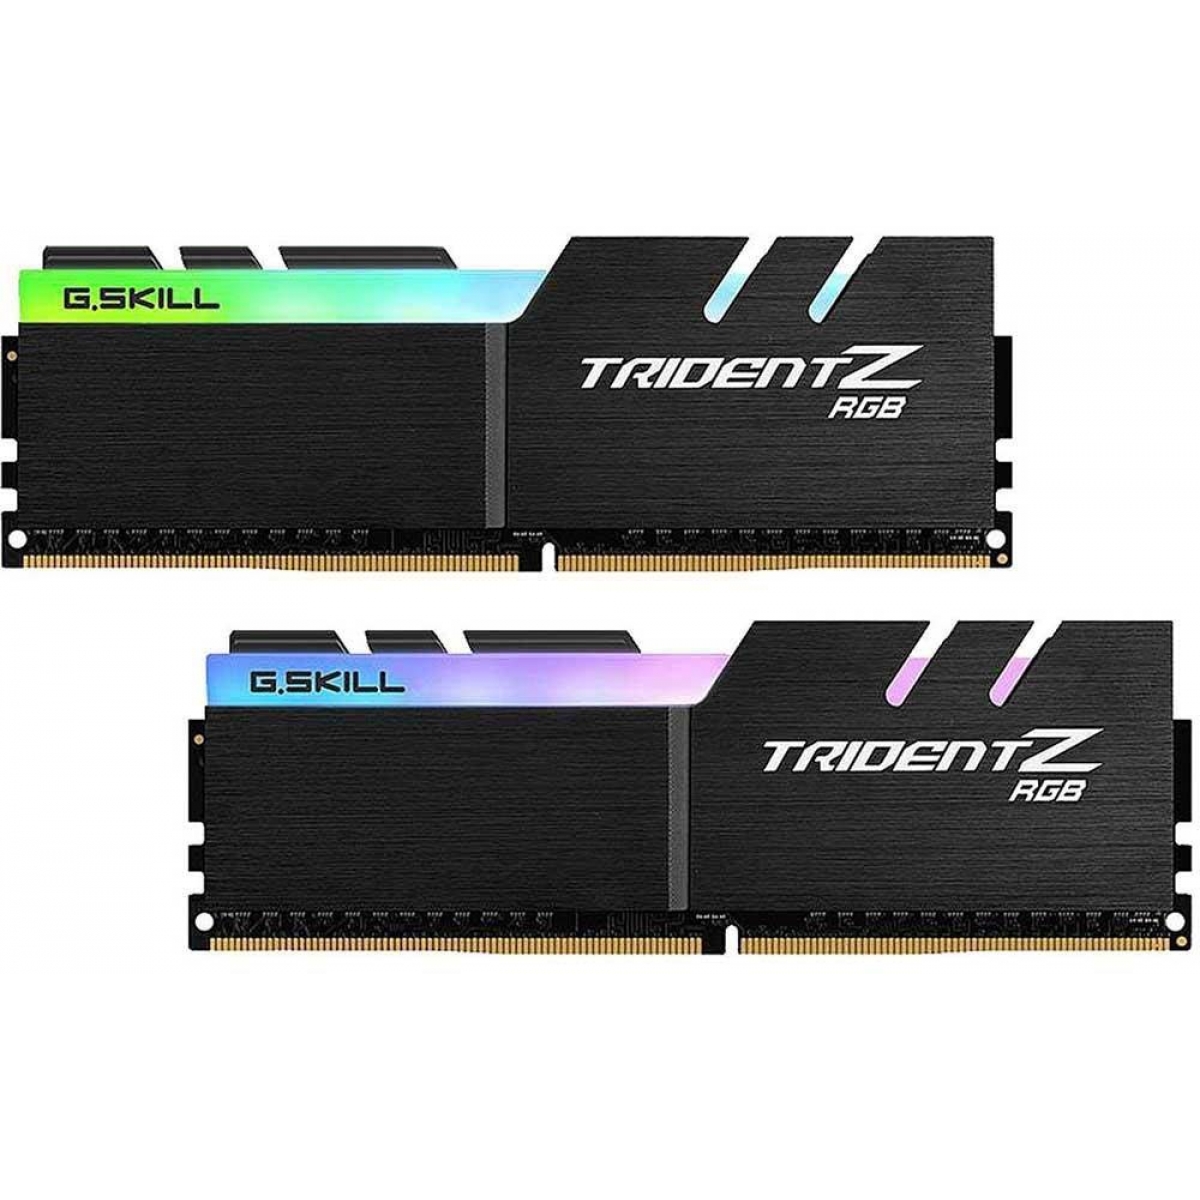 Memória DDR4 G.Skill Trident Z RGB, 32GB (2x16GB) 3200MHz, F4-3200C16D-32GTZR